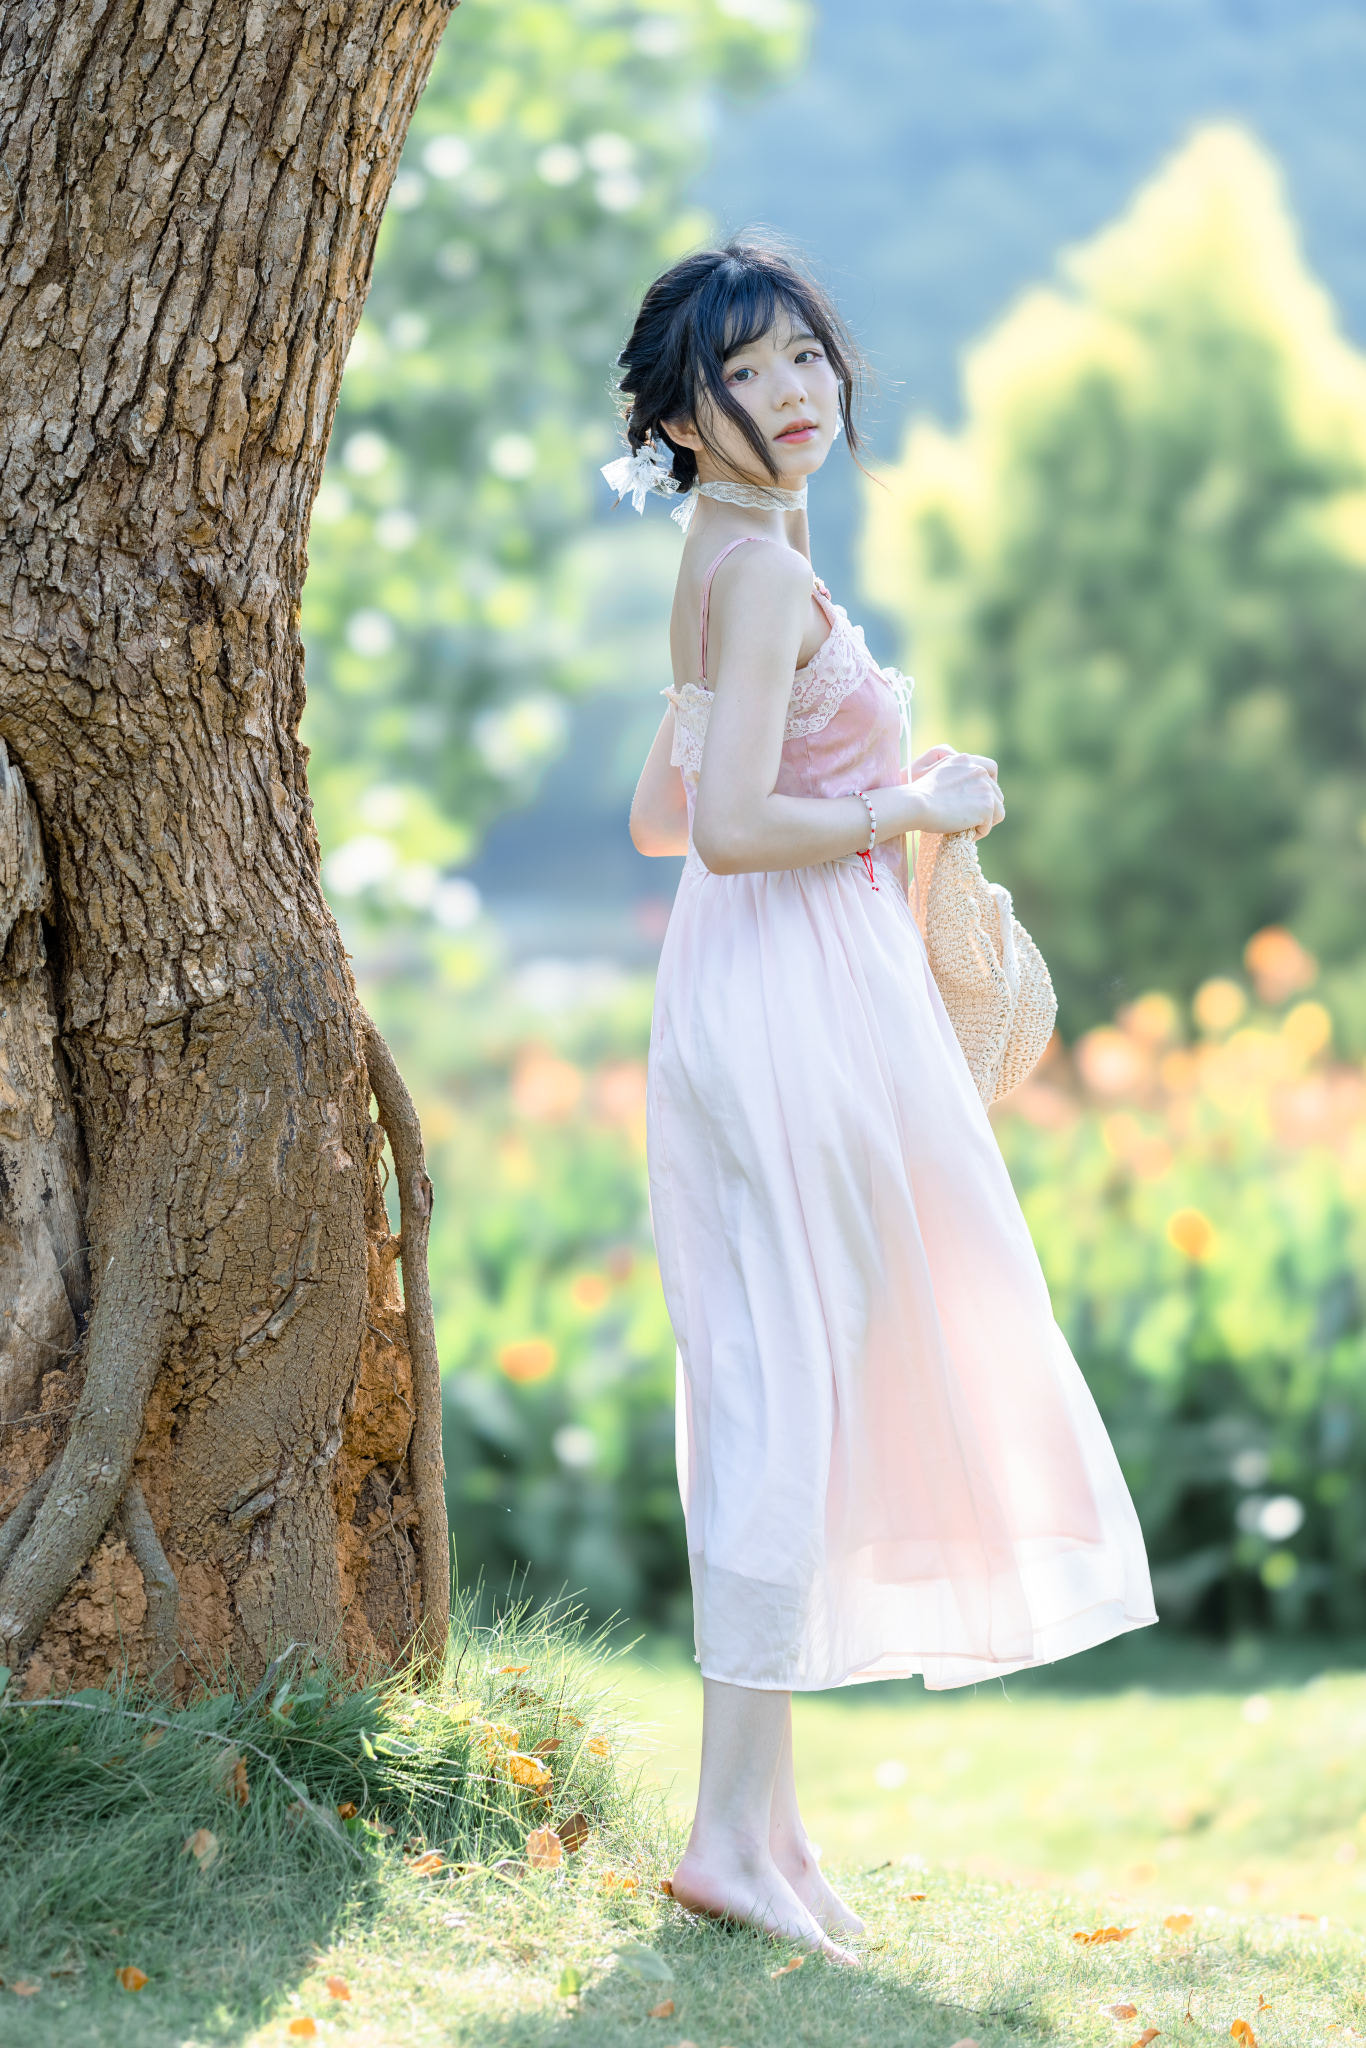 People 1366x2048 Qin Xiaoqiang women Asian dark hair dress white clothing barefoot trees outdoors